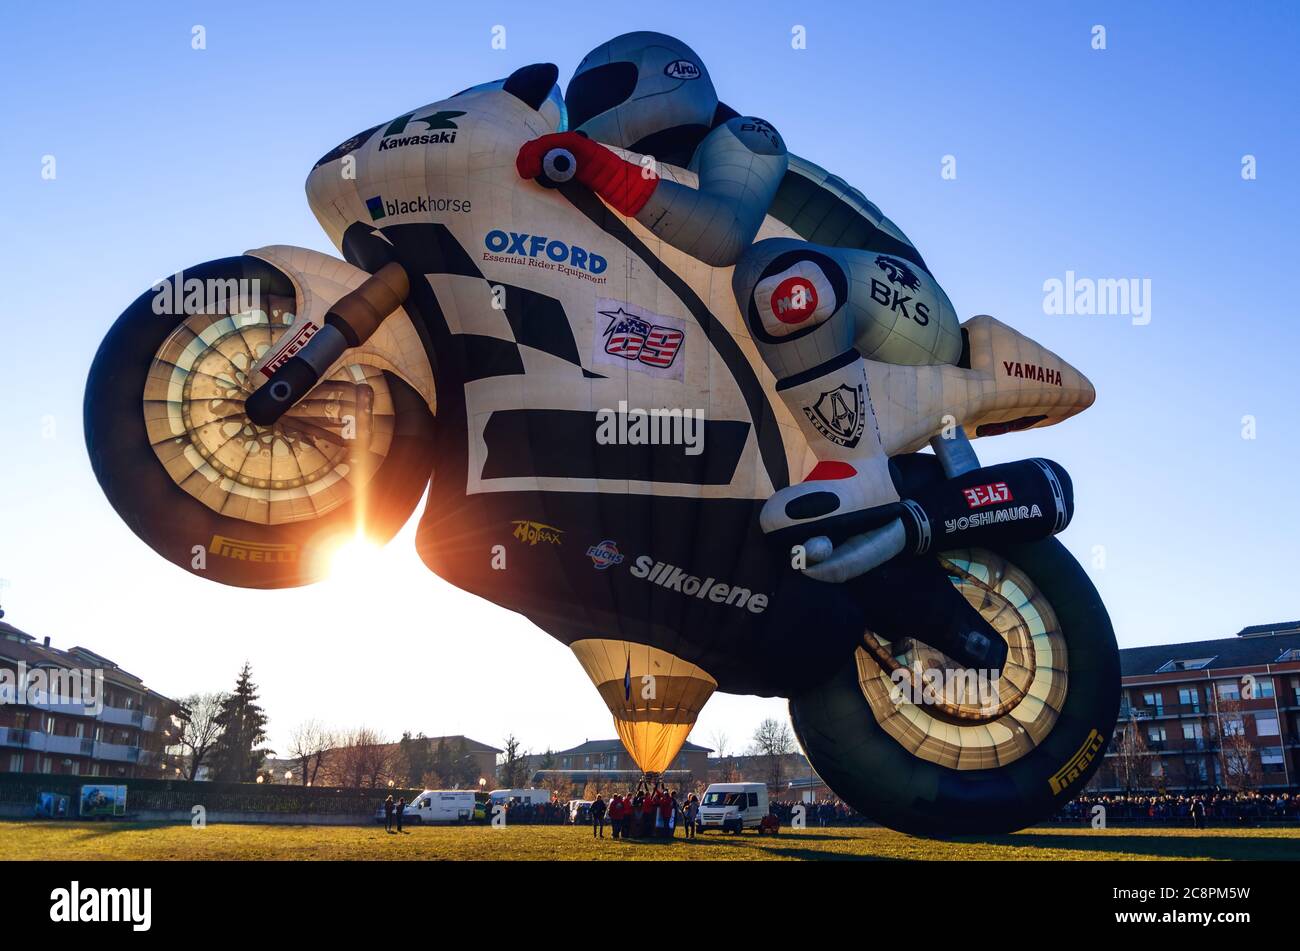 Mondovì, Italie - 5 janvier 2019 : ballon à air chaud très grand en forme de moto, juste avant le décollage pendant le festival épiphanie traditionnel Banque D'Images